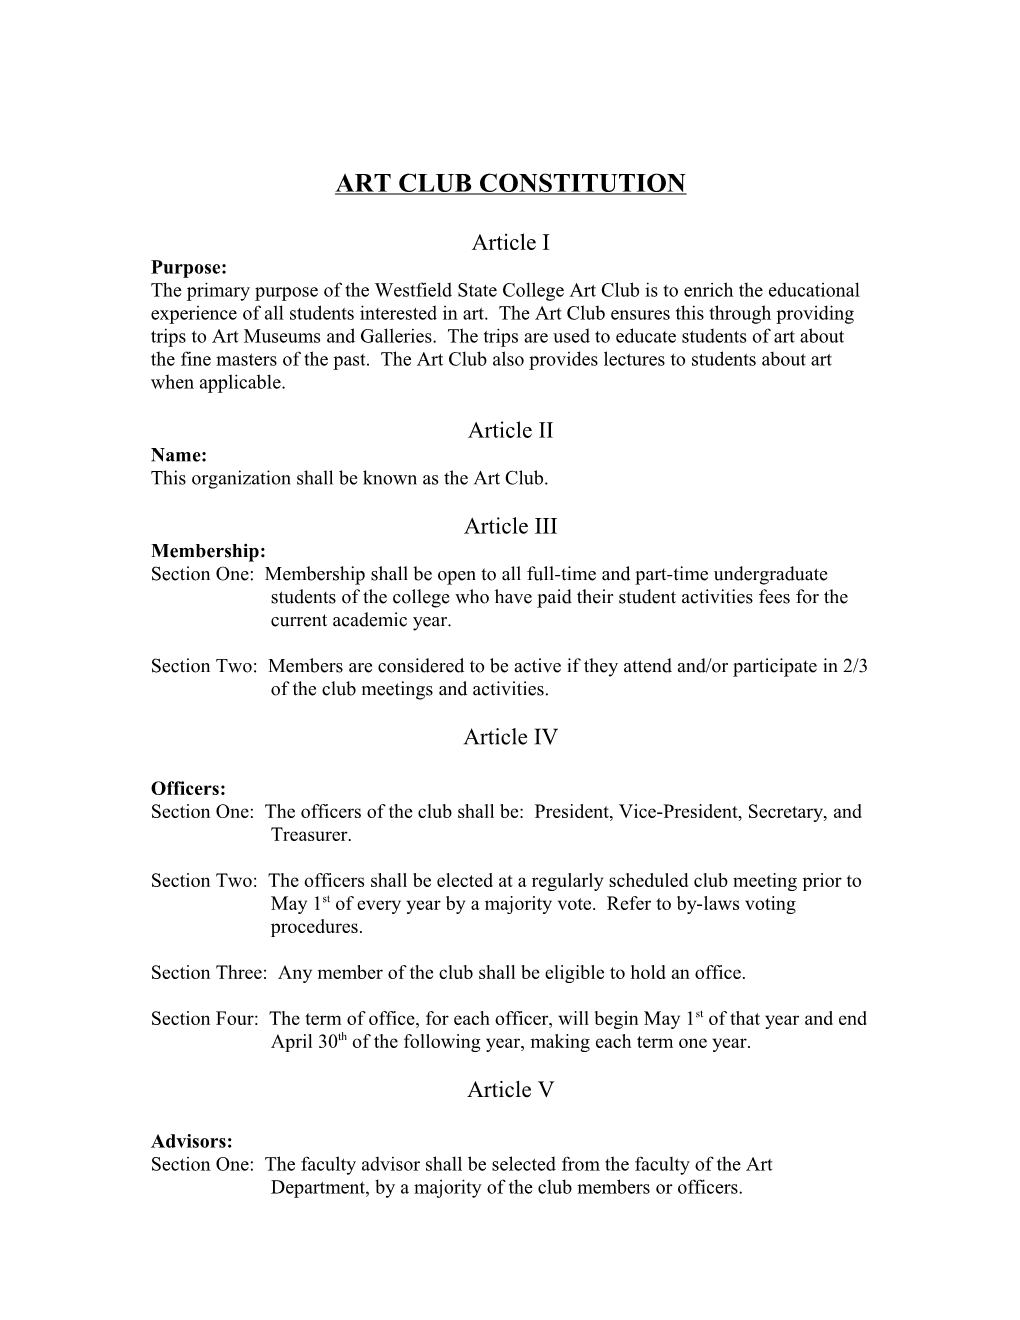 Art Club Constitution